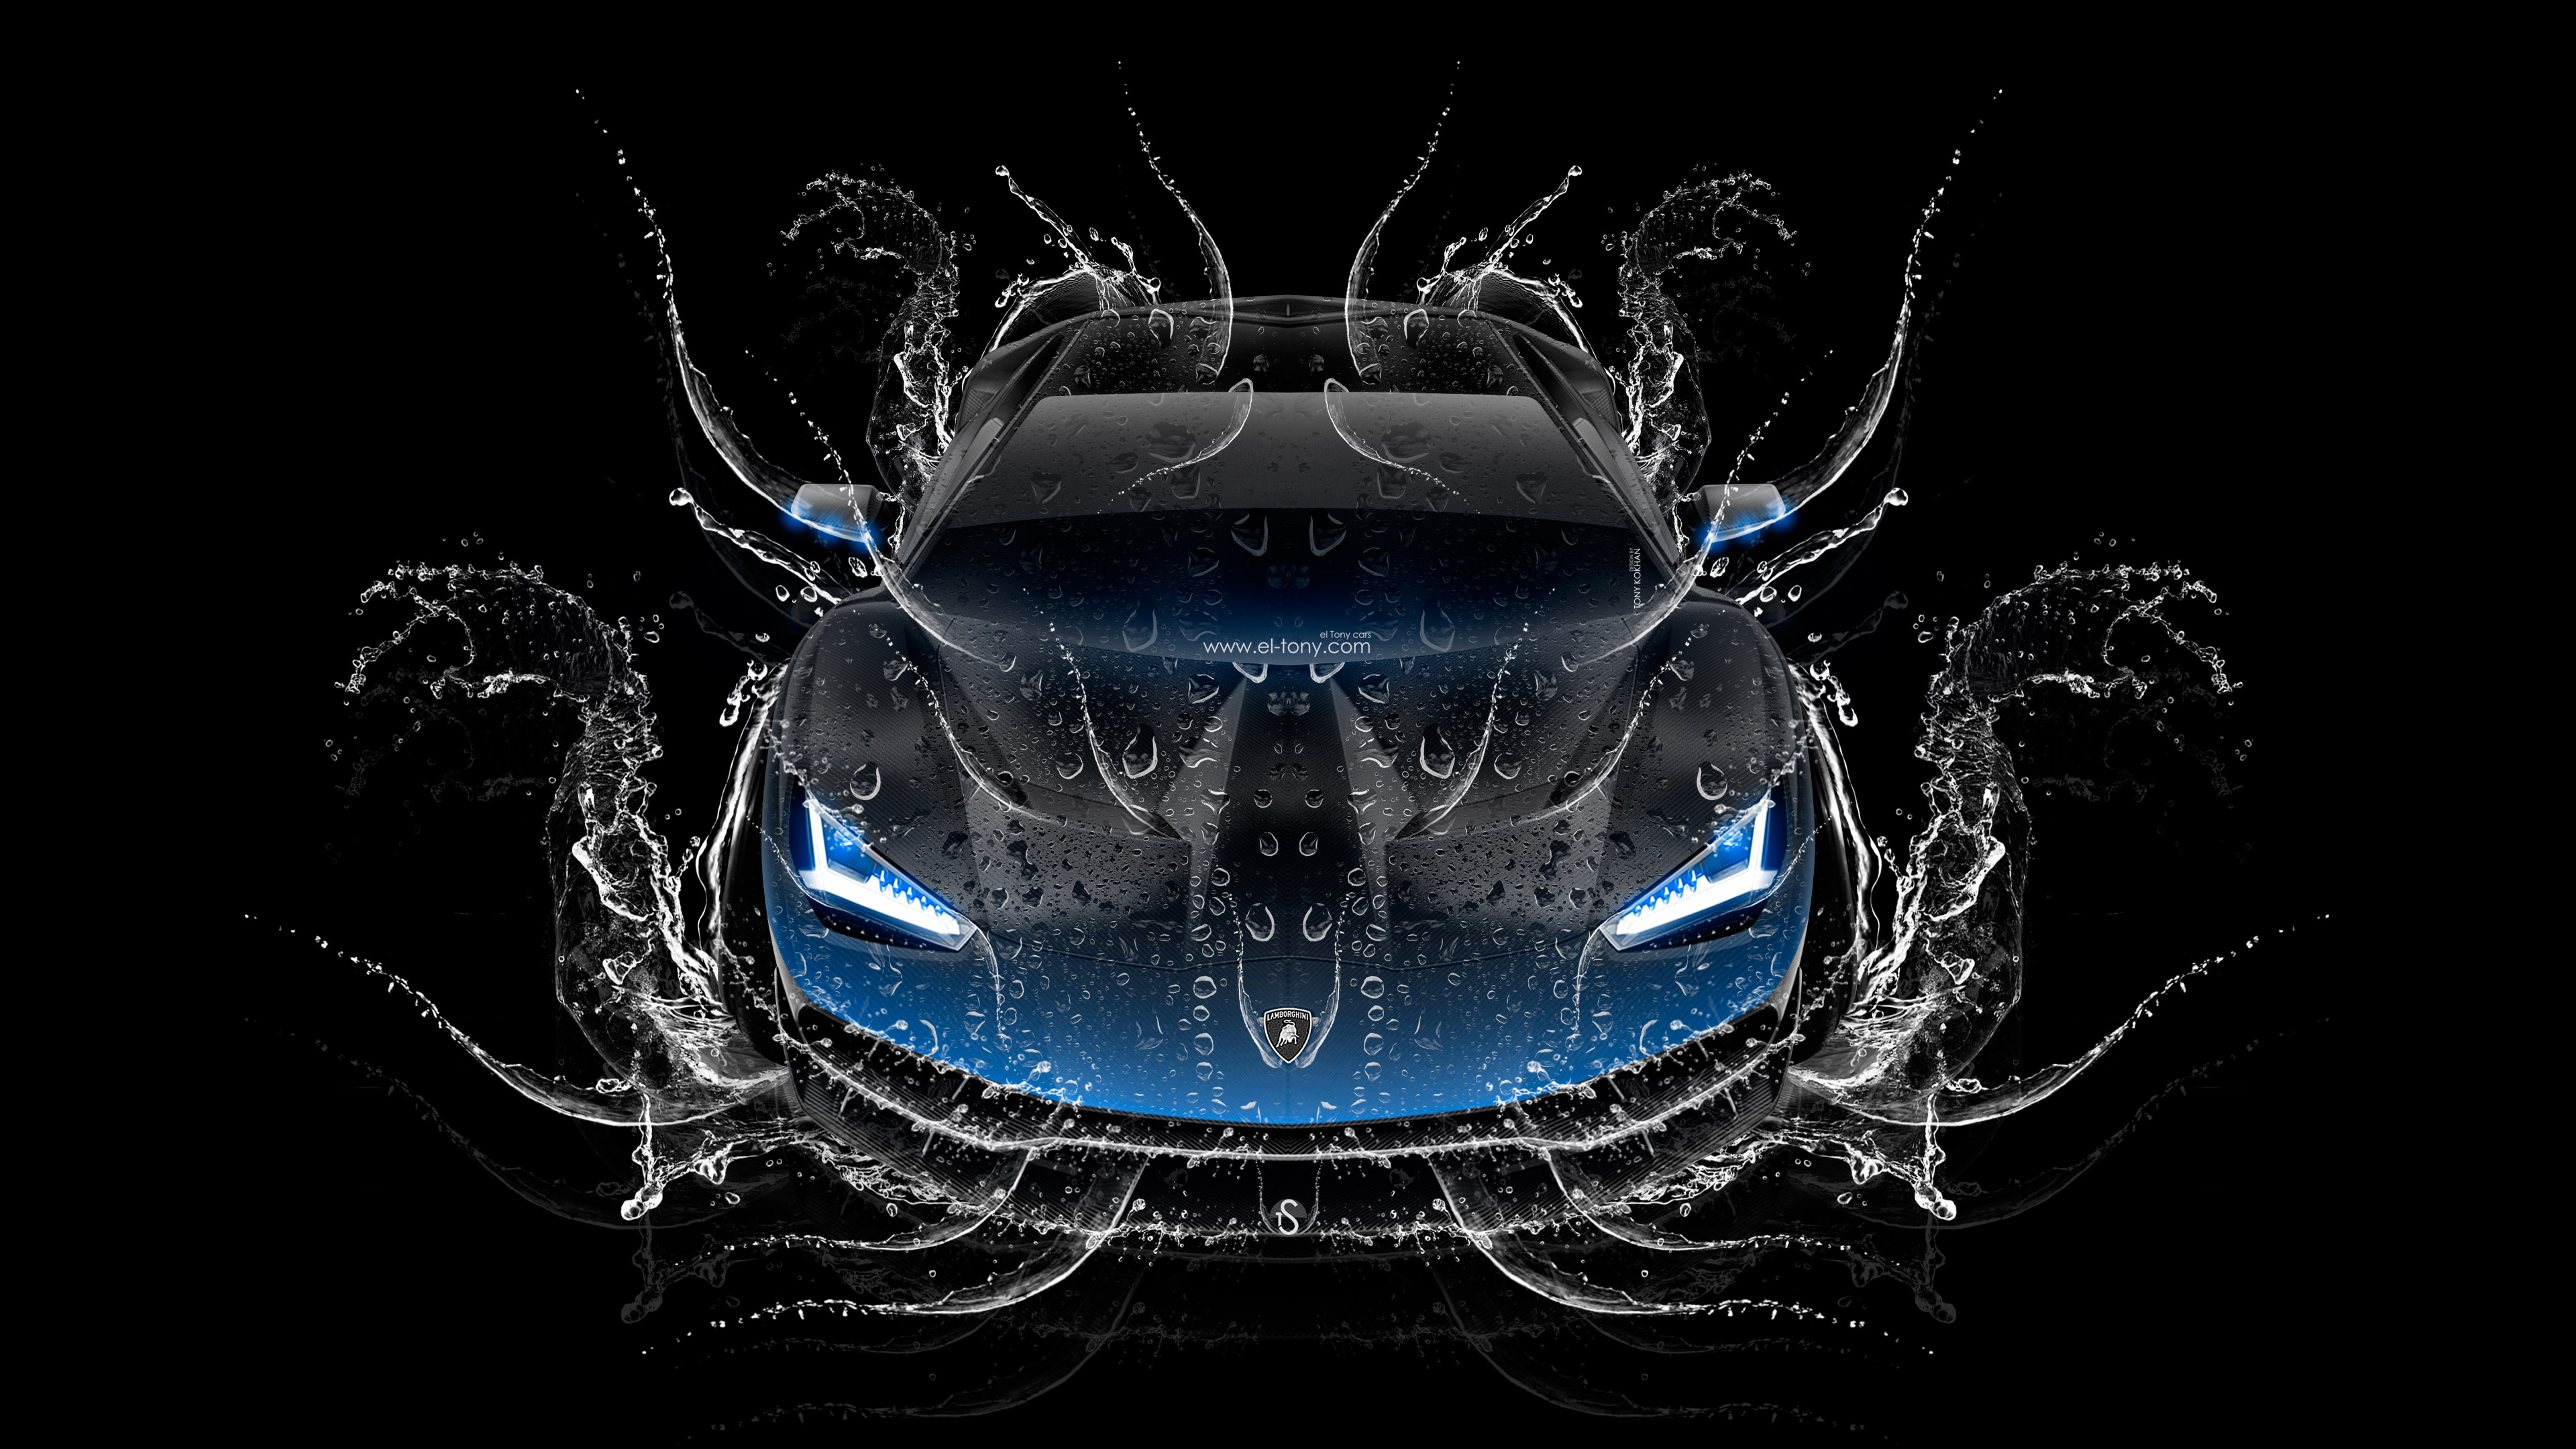 Lamborghini Centenario Frontup Super Water Car Wallpaper 4k